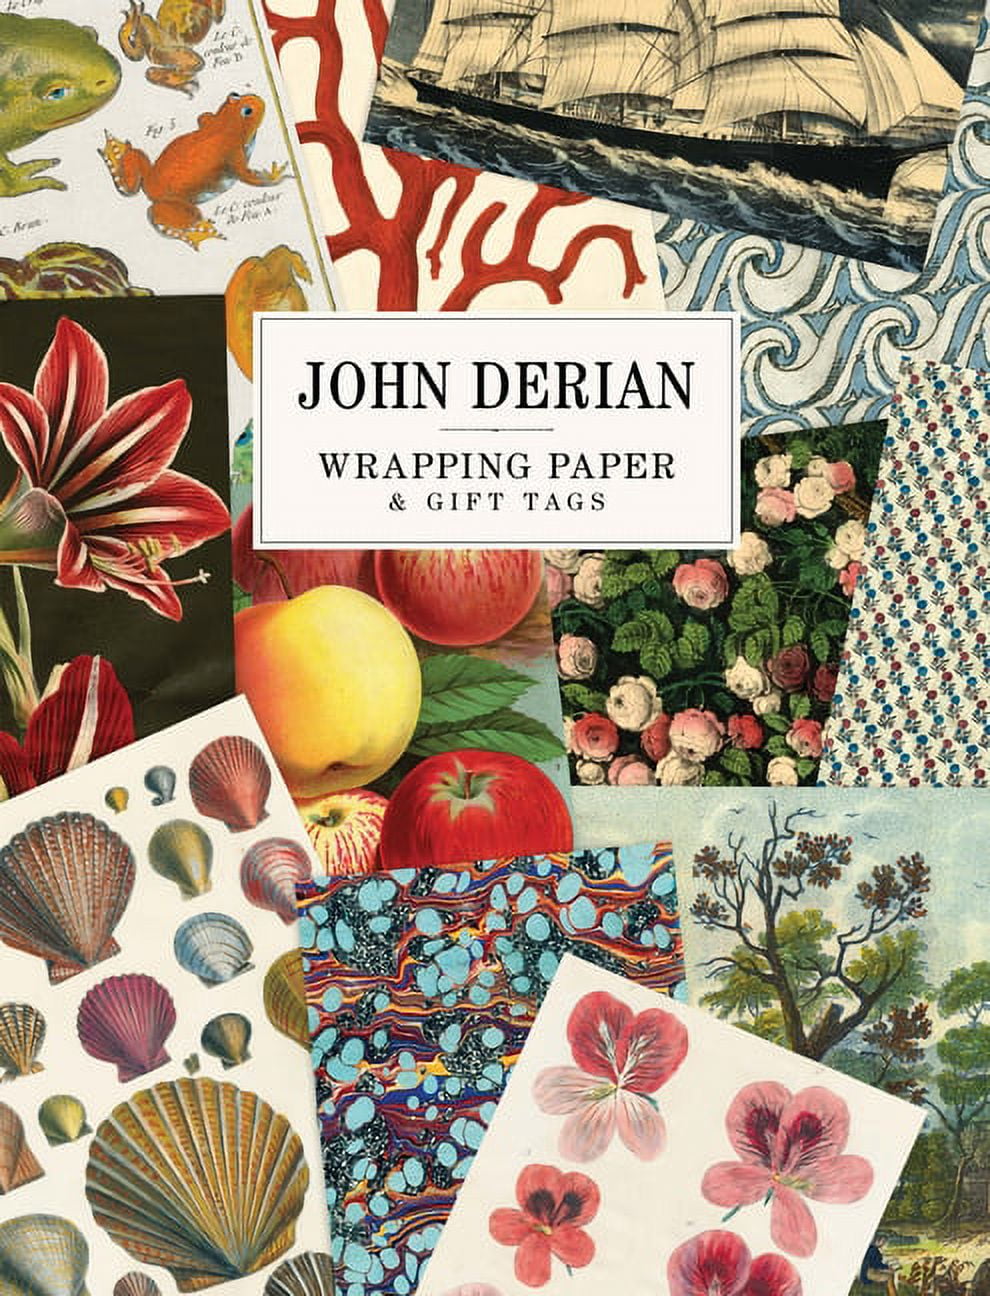 London Centre for Book Arts – JOHN DERIAN STICKER BOOK by John Derian